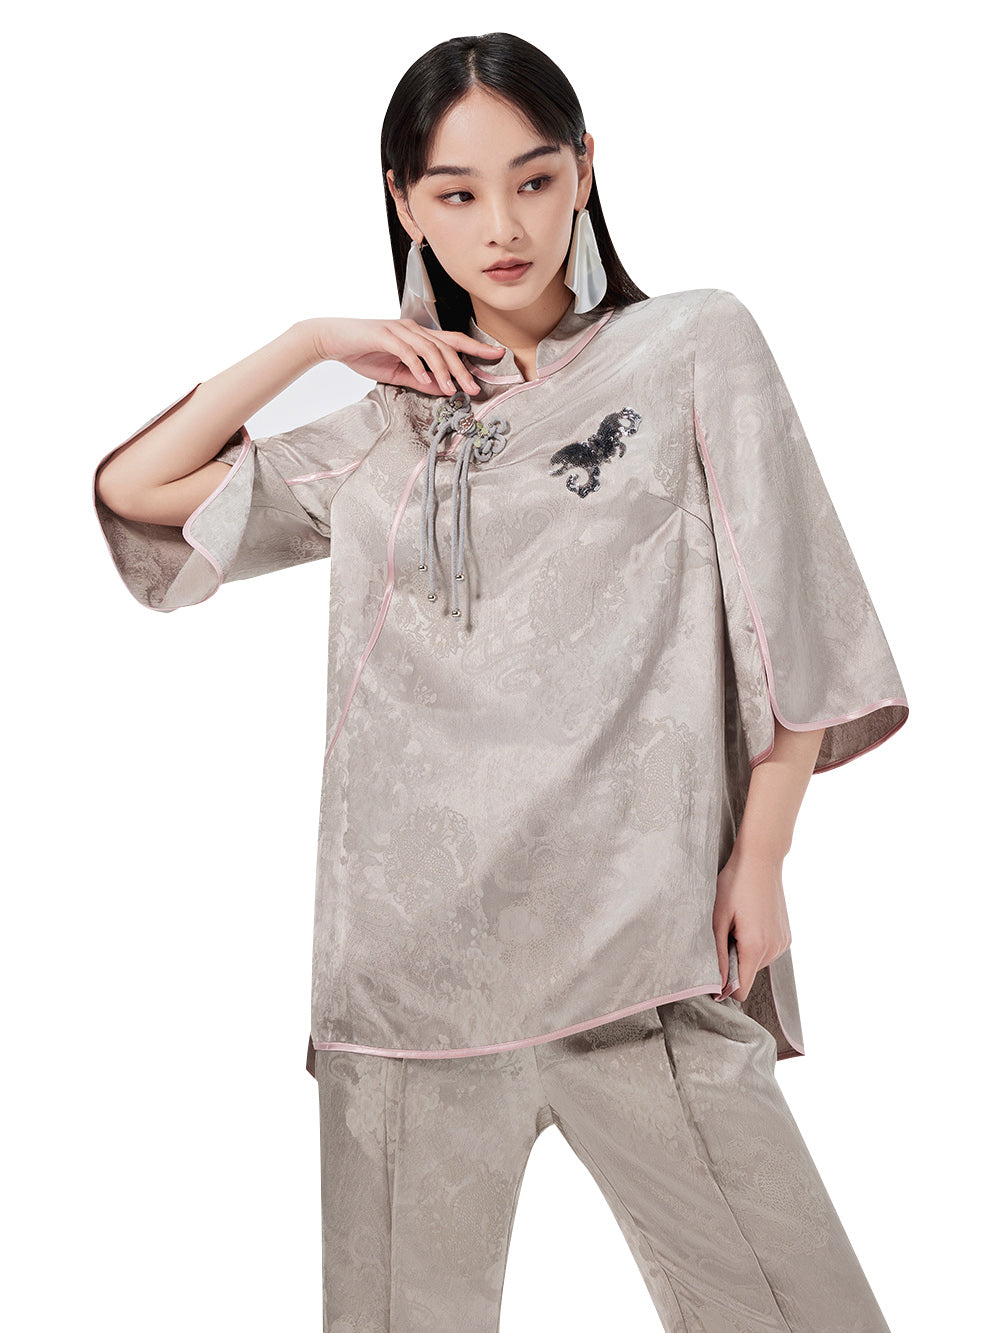 MUKZIN Chinese Jacquard Elegant Mid-sleeve T-shirt